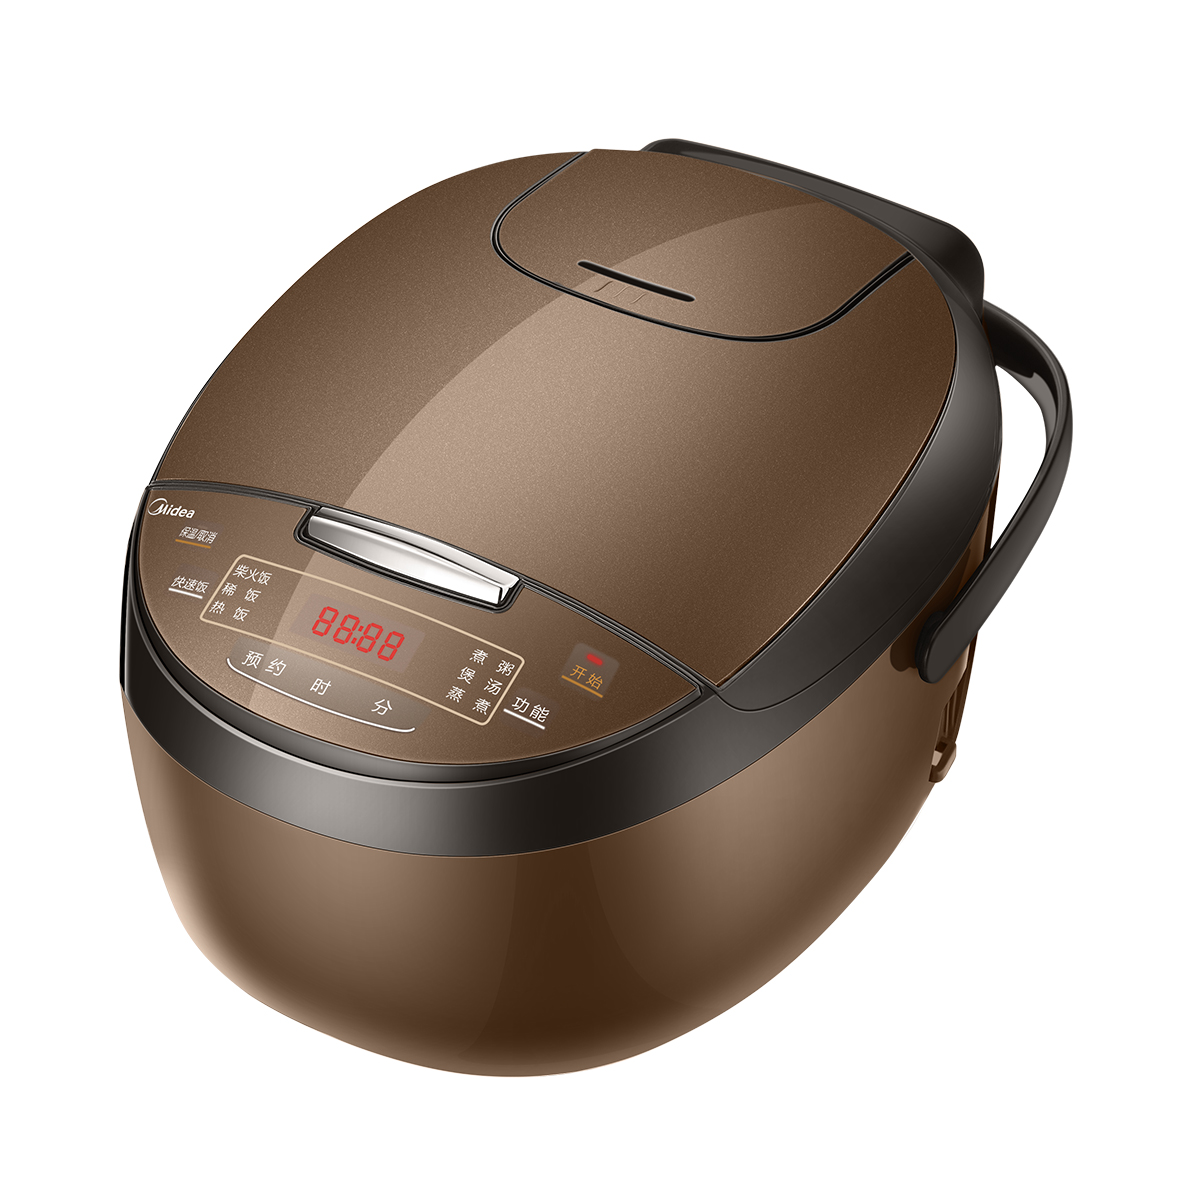 美的智能电饭煲怎么用—怎么使用美的智能电饭煲 - 舒适100网